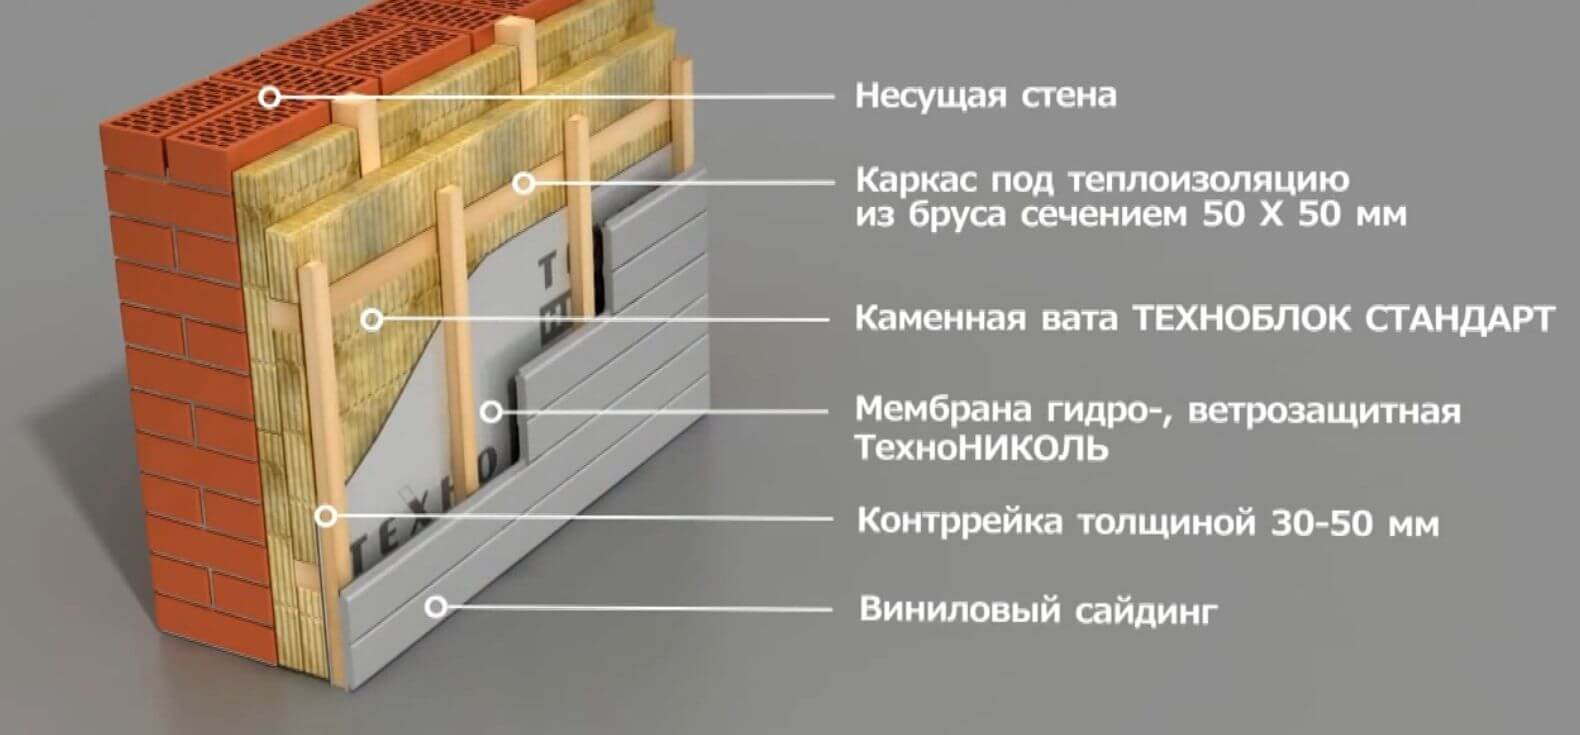 Дополнительное утепление стен деревянного дома